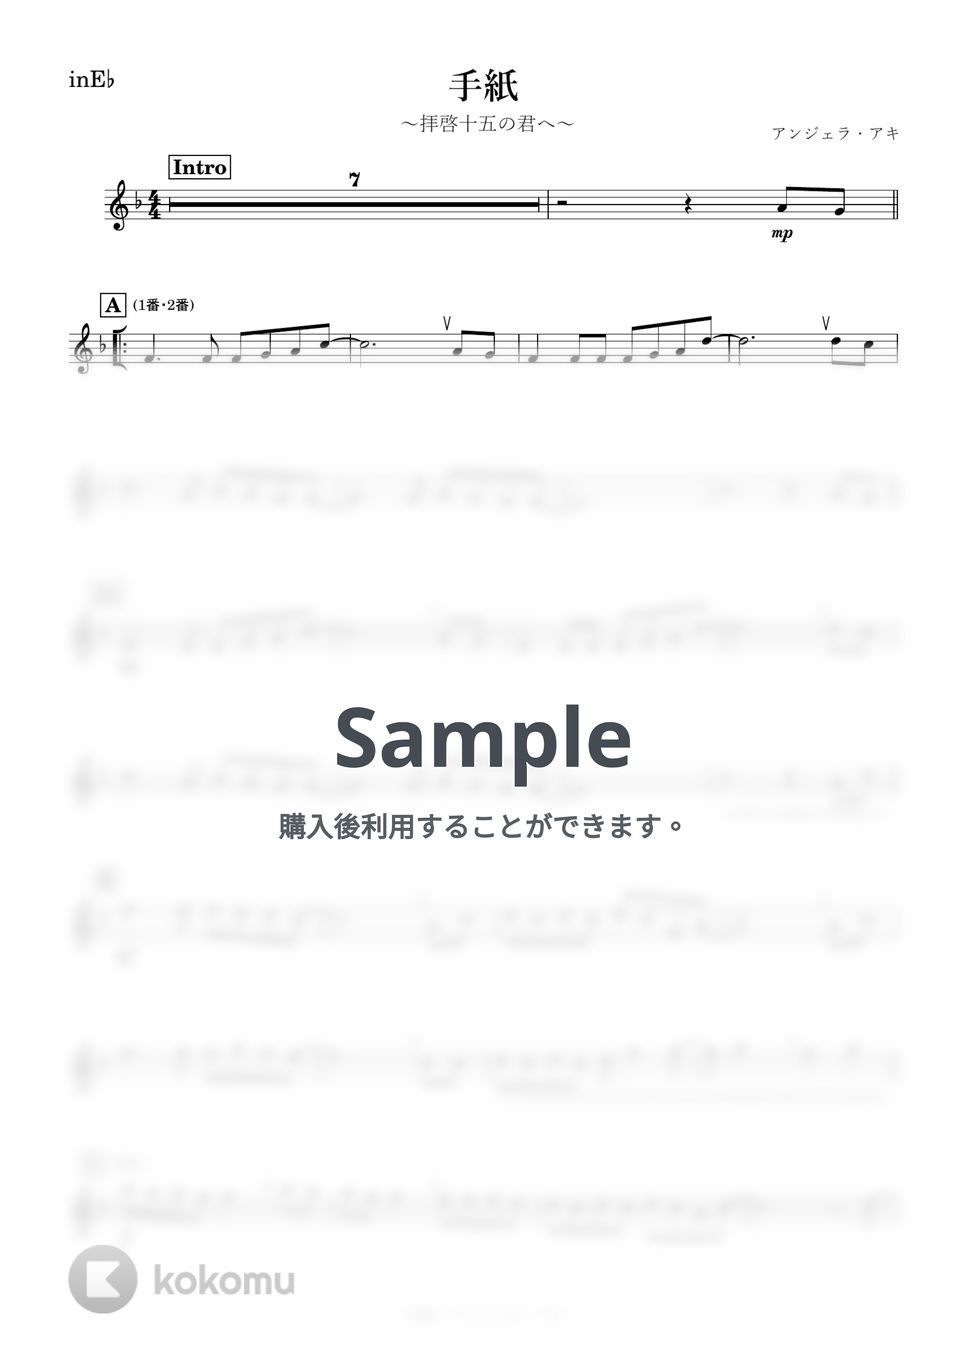 アンジェラ・アキ - 手紙 (E♭) by kanamsuic